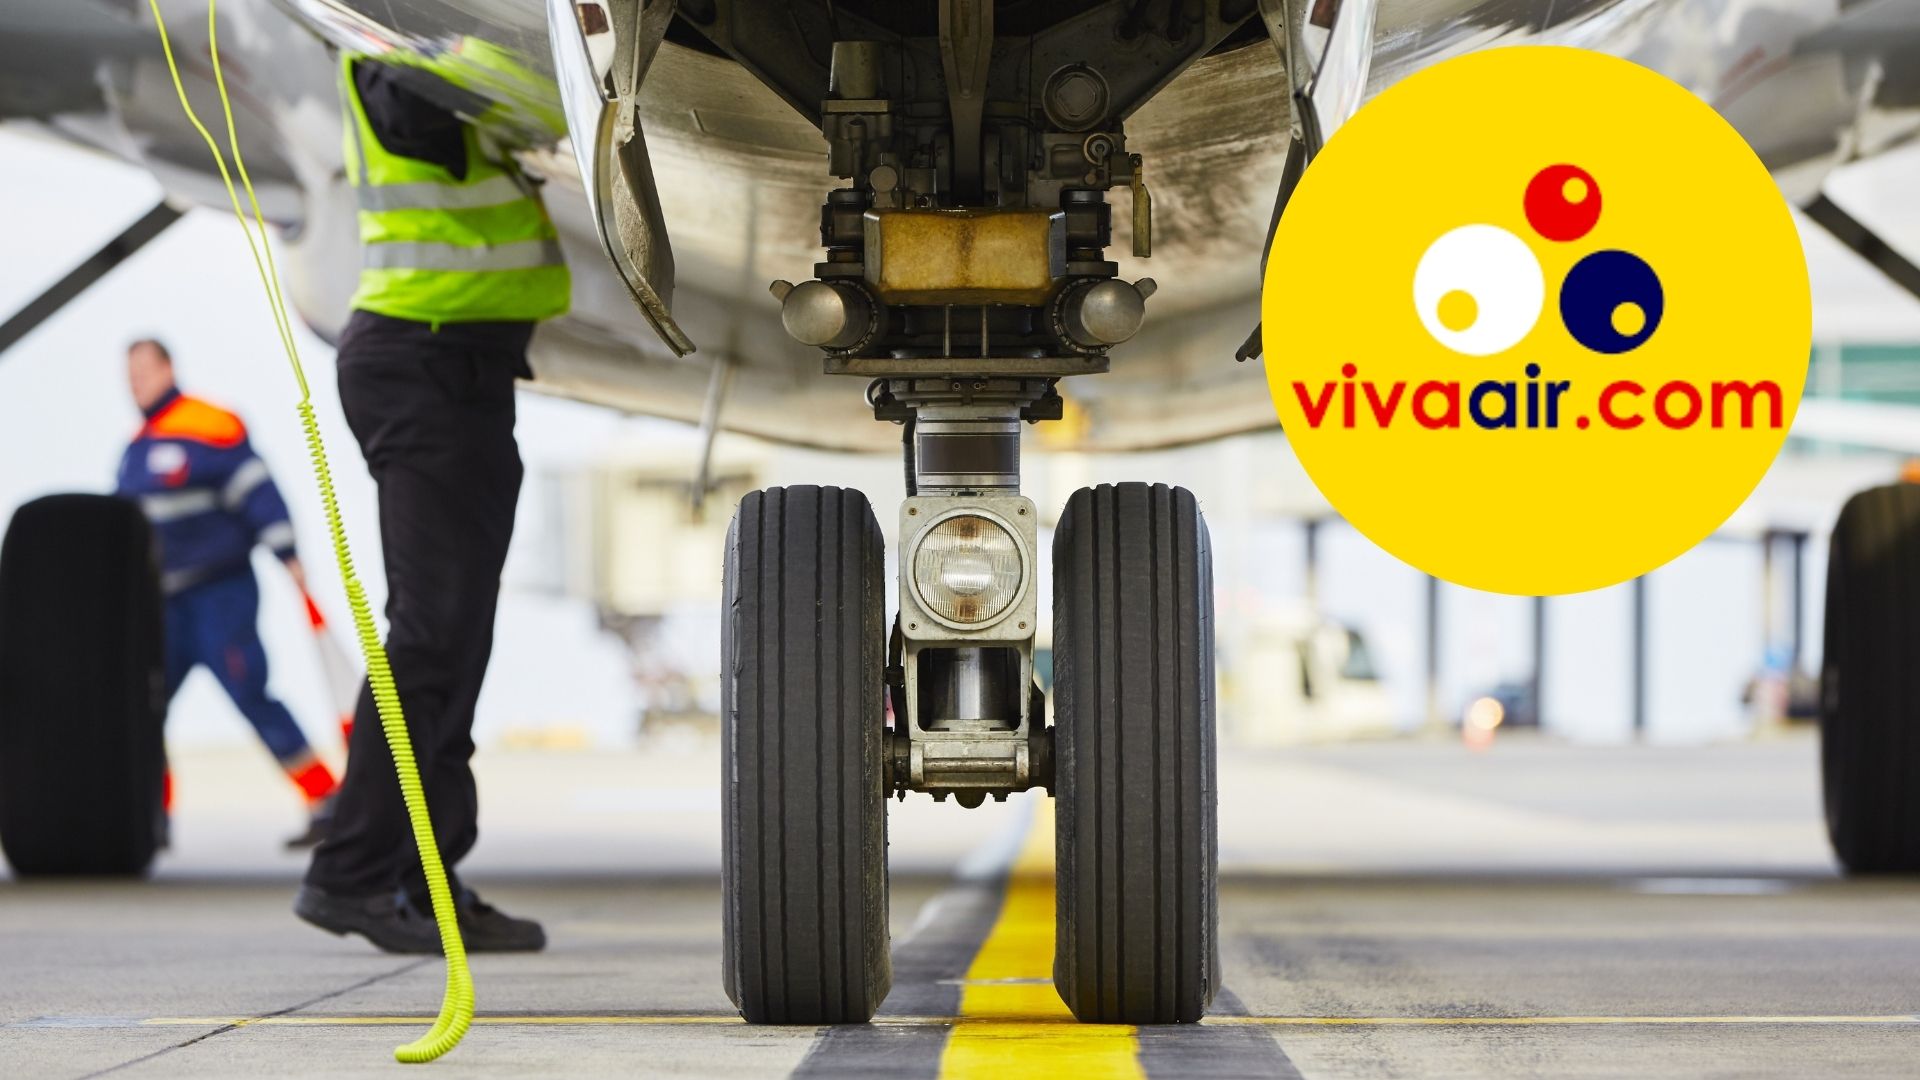 Imagen de llantas de avión por nota sobre liquidación de Viva Air